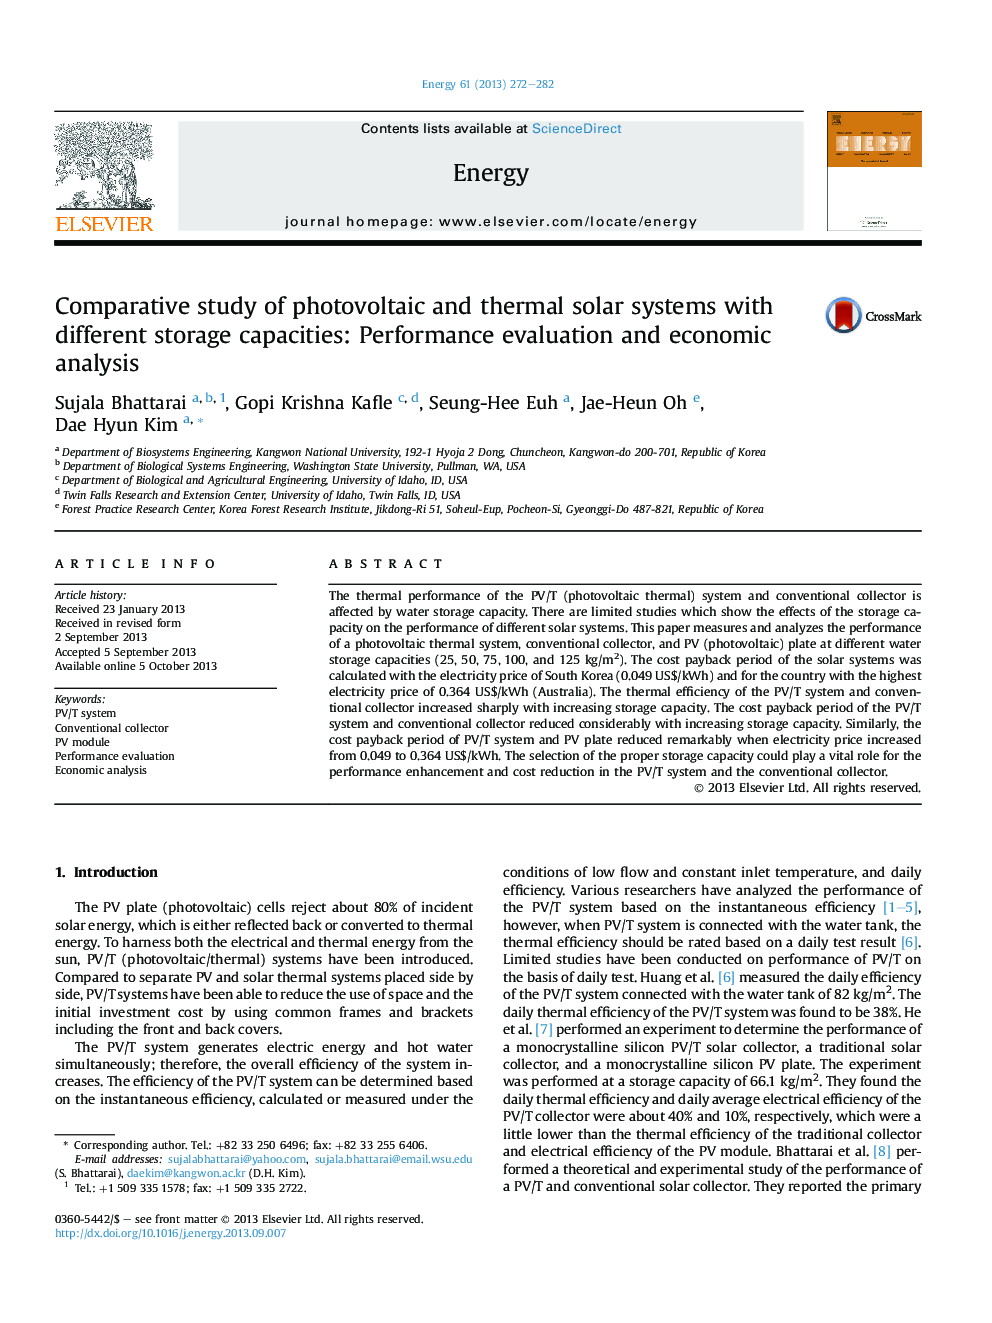 بررسی مقایسه ای سیستم های خورشیدی فتوولتائیک و حرارتی با ظرفیت های مختلف ذخیره سازی: ارزیابی عملکرد و تحلیل اقتصادی 